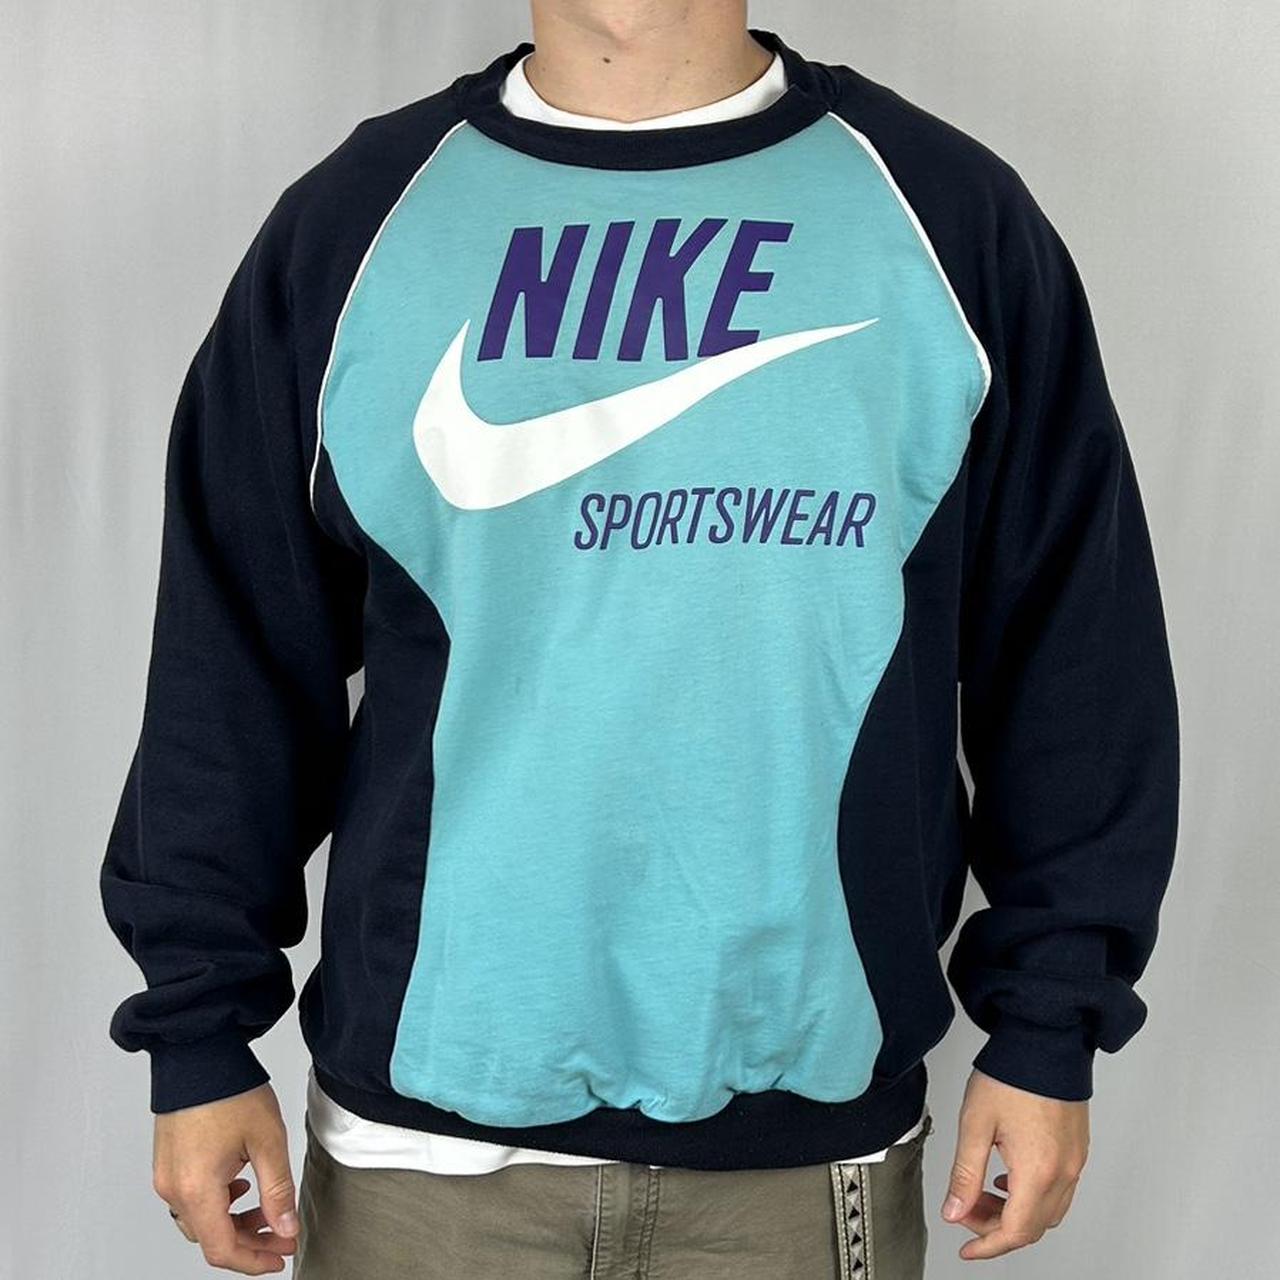 Nike Swoosh Rework sweatshirt in blue and... - Depop